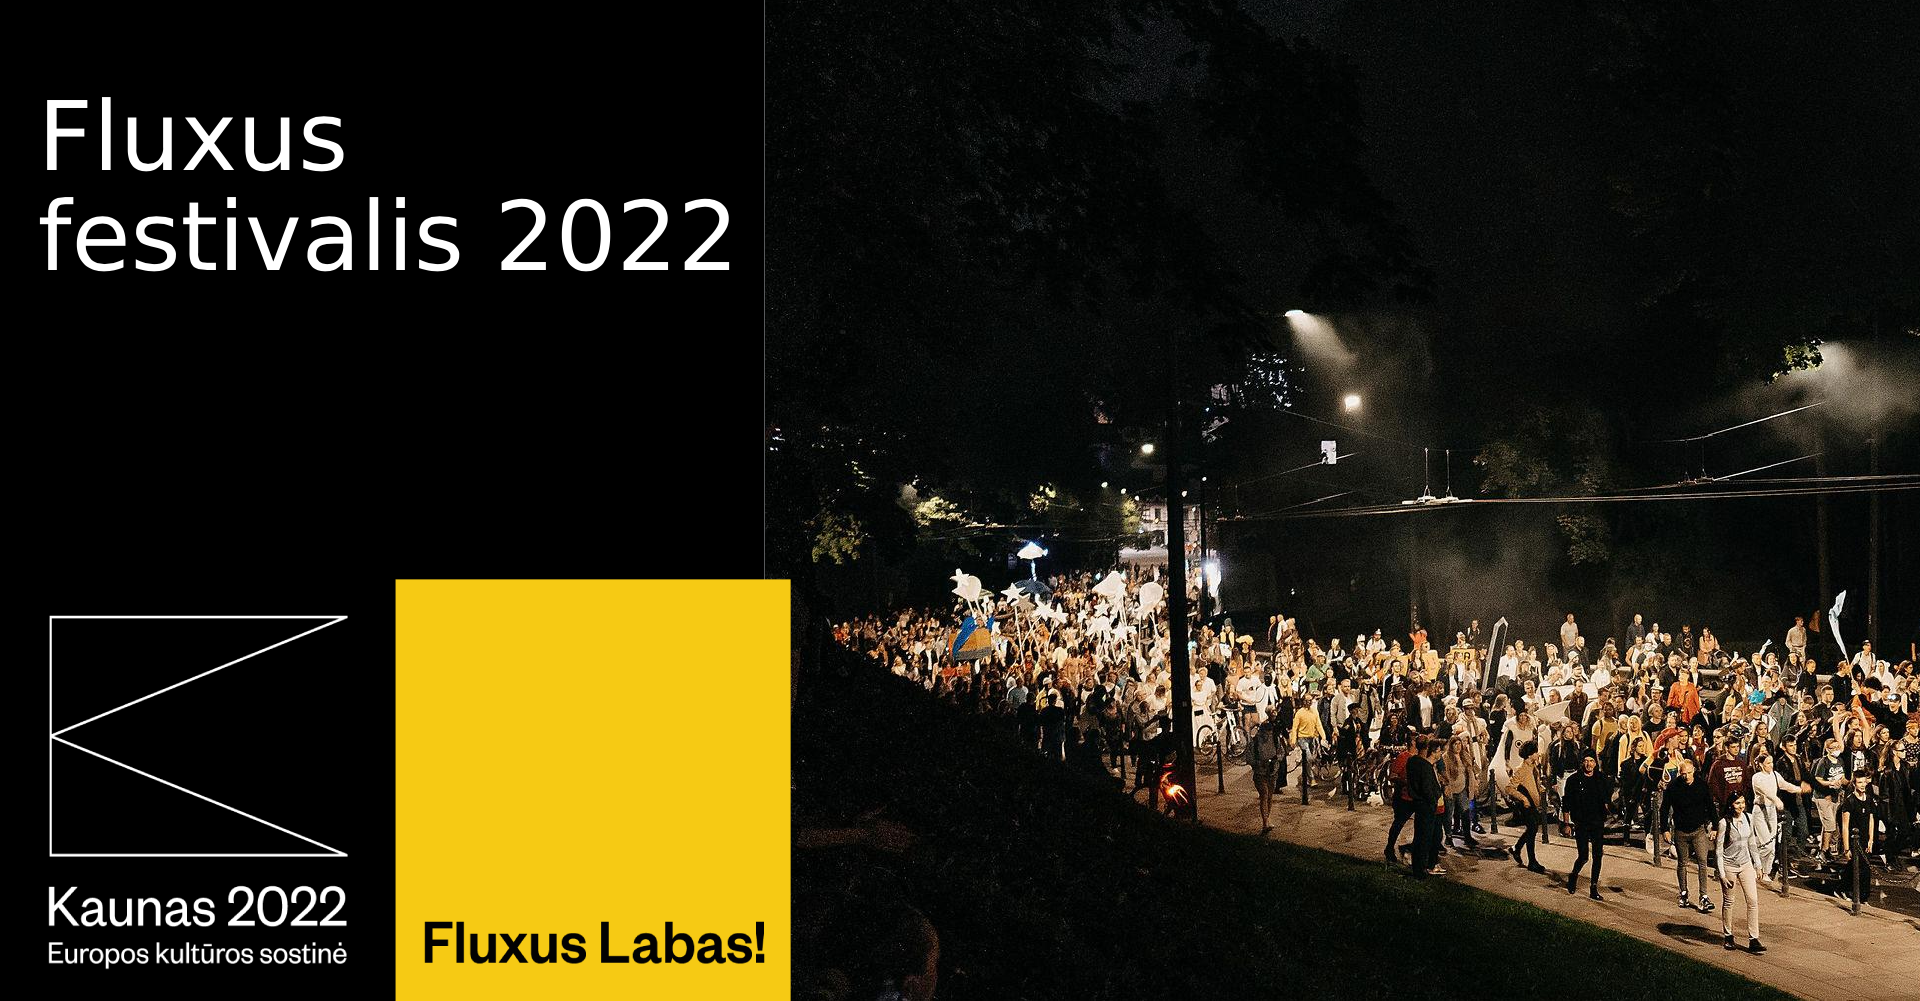 Fluxus festivalis 2022